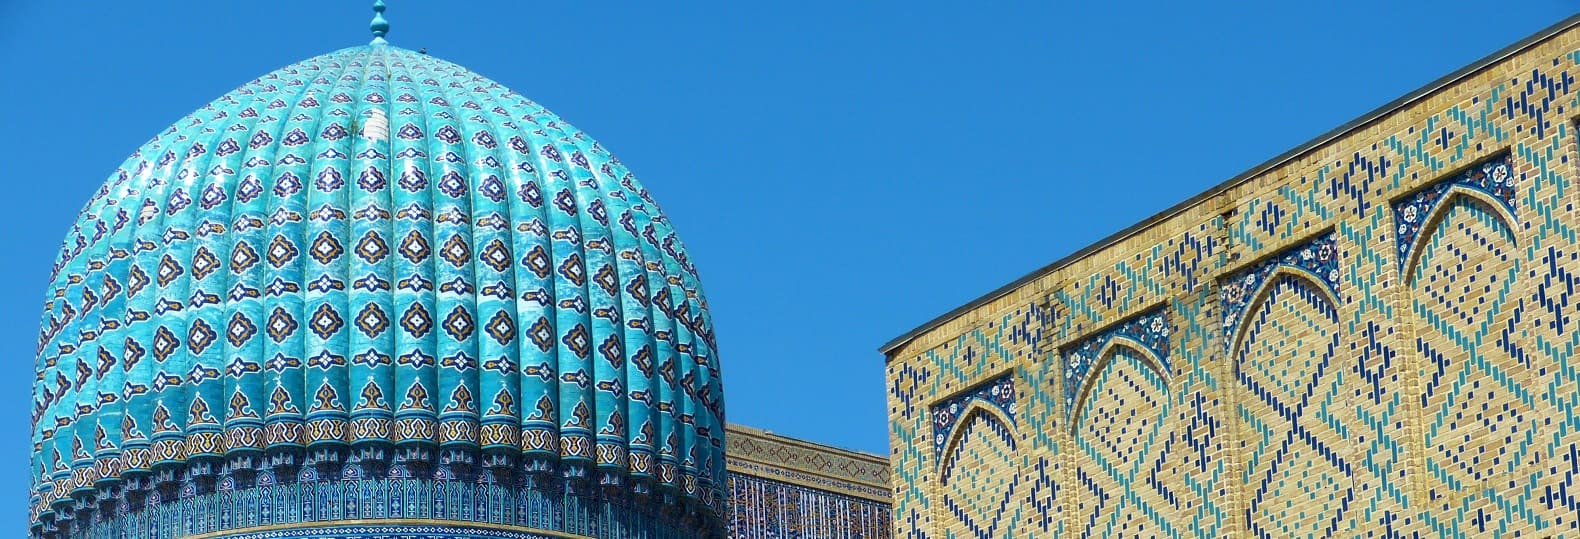 Voyage culturel ouzbekistan